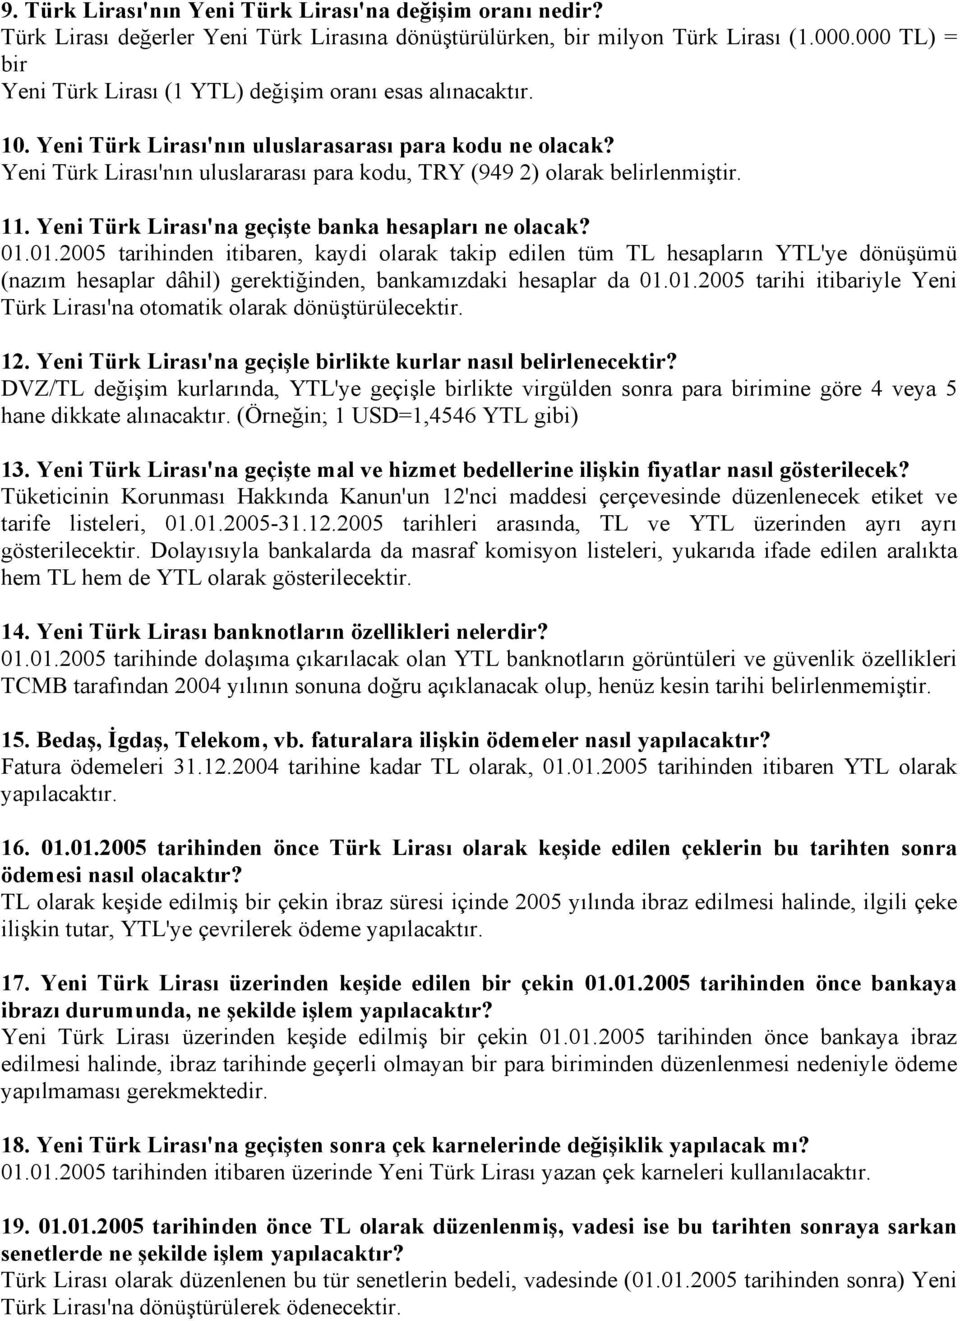 Yeni Türk Lirası'nın uluslararası para kodu, TRY (949 2) olarak belirlenmiştir. 11. Yeni Türk Lirası'na geçişte banka hesapları ne olacak? 01.